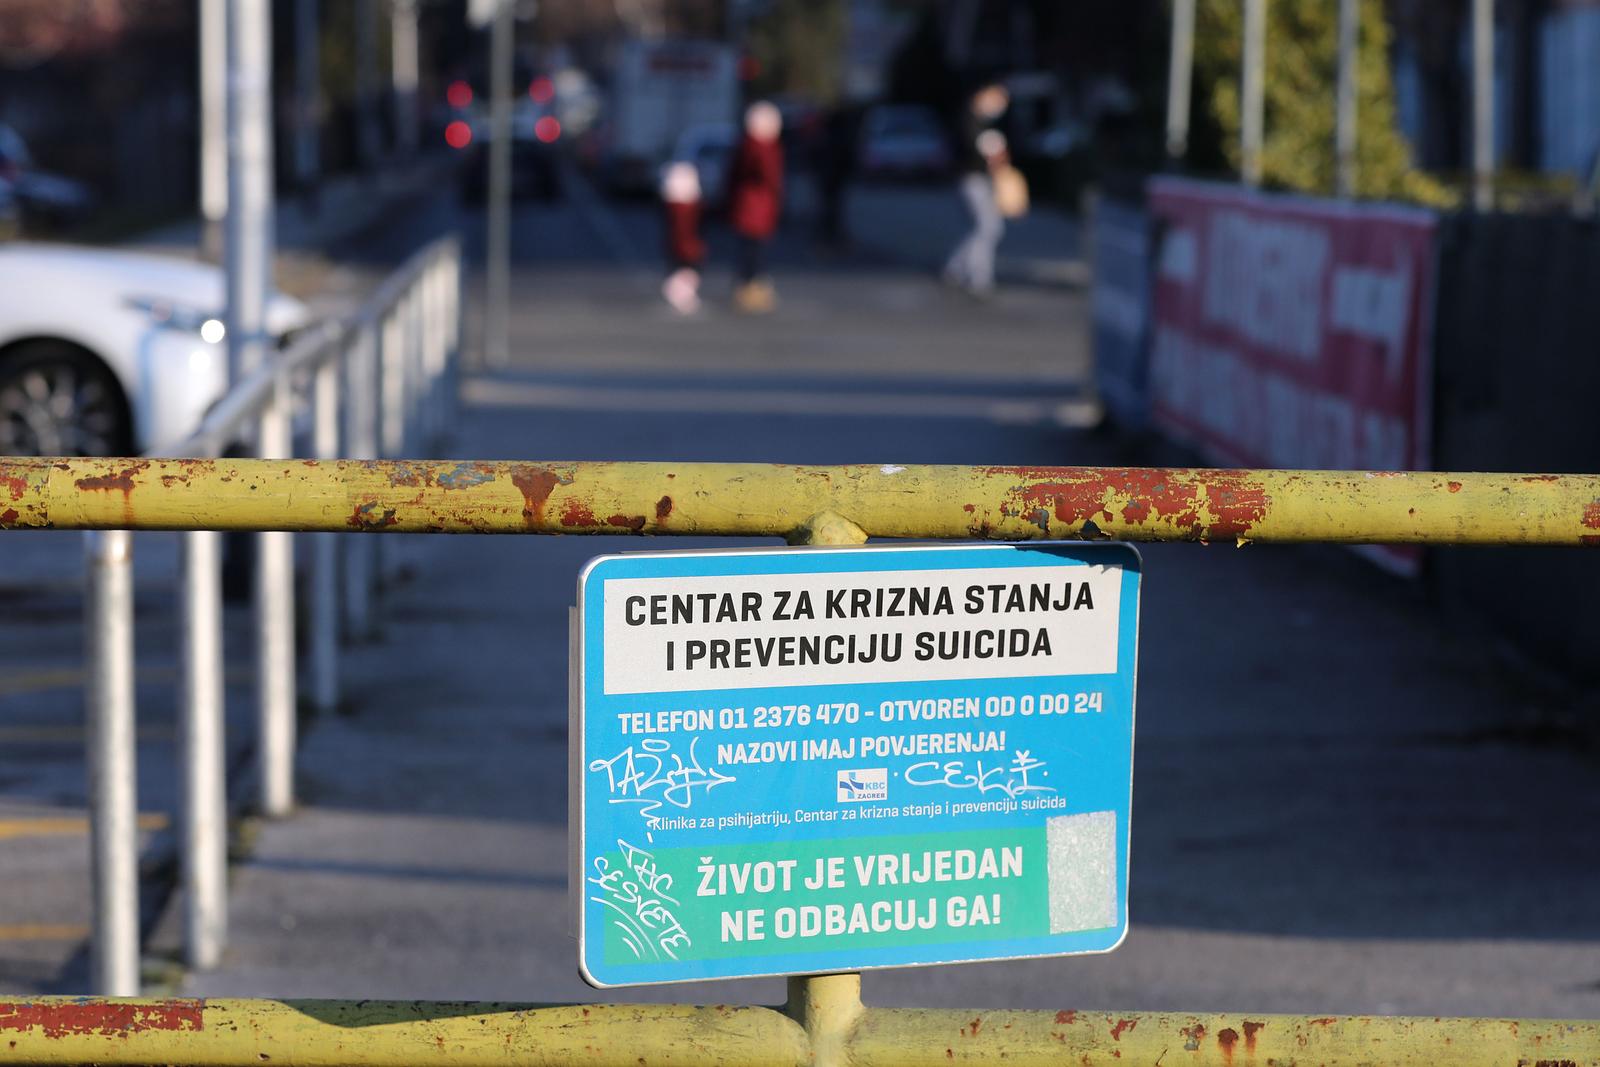 12.10.2022., Zagreb - Na pruznom prijelazu u Sesvetama uz zabranu hodanja prugom postavljena je i ploca sa kontaktom centra za krizna stanja i prevenciju suicida. Photo: Patrik Macek/PIXSELL